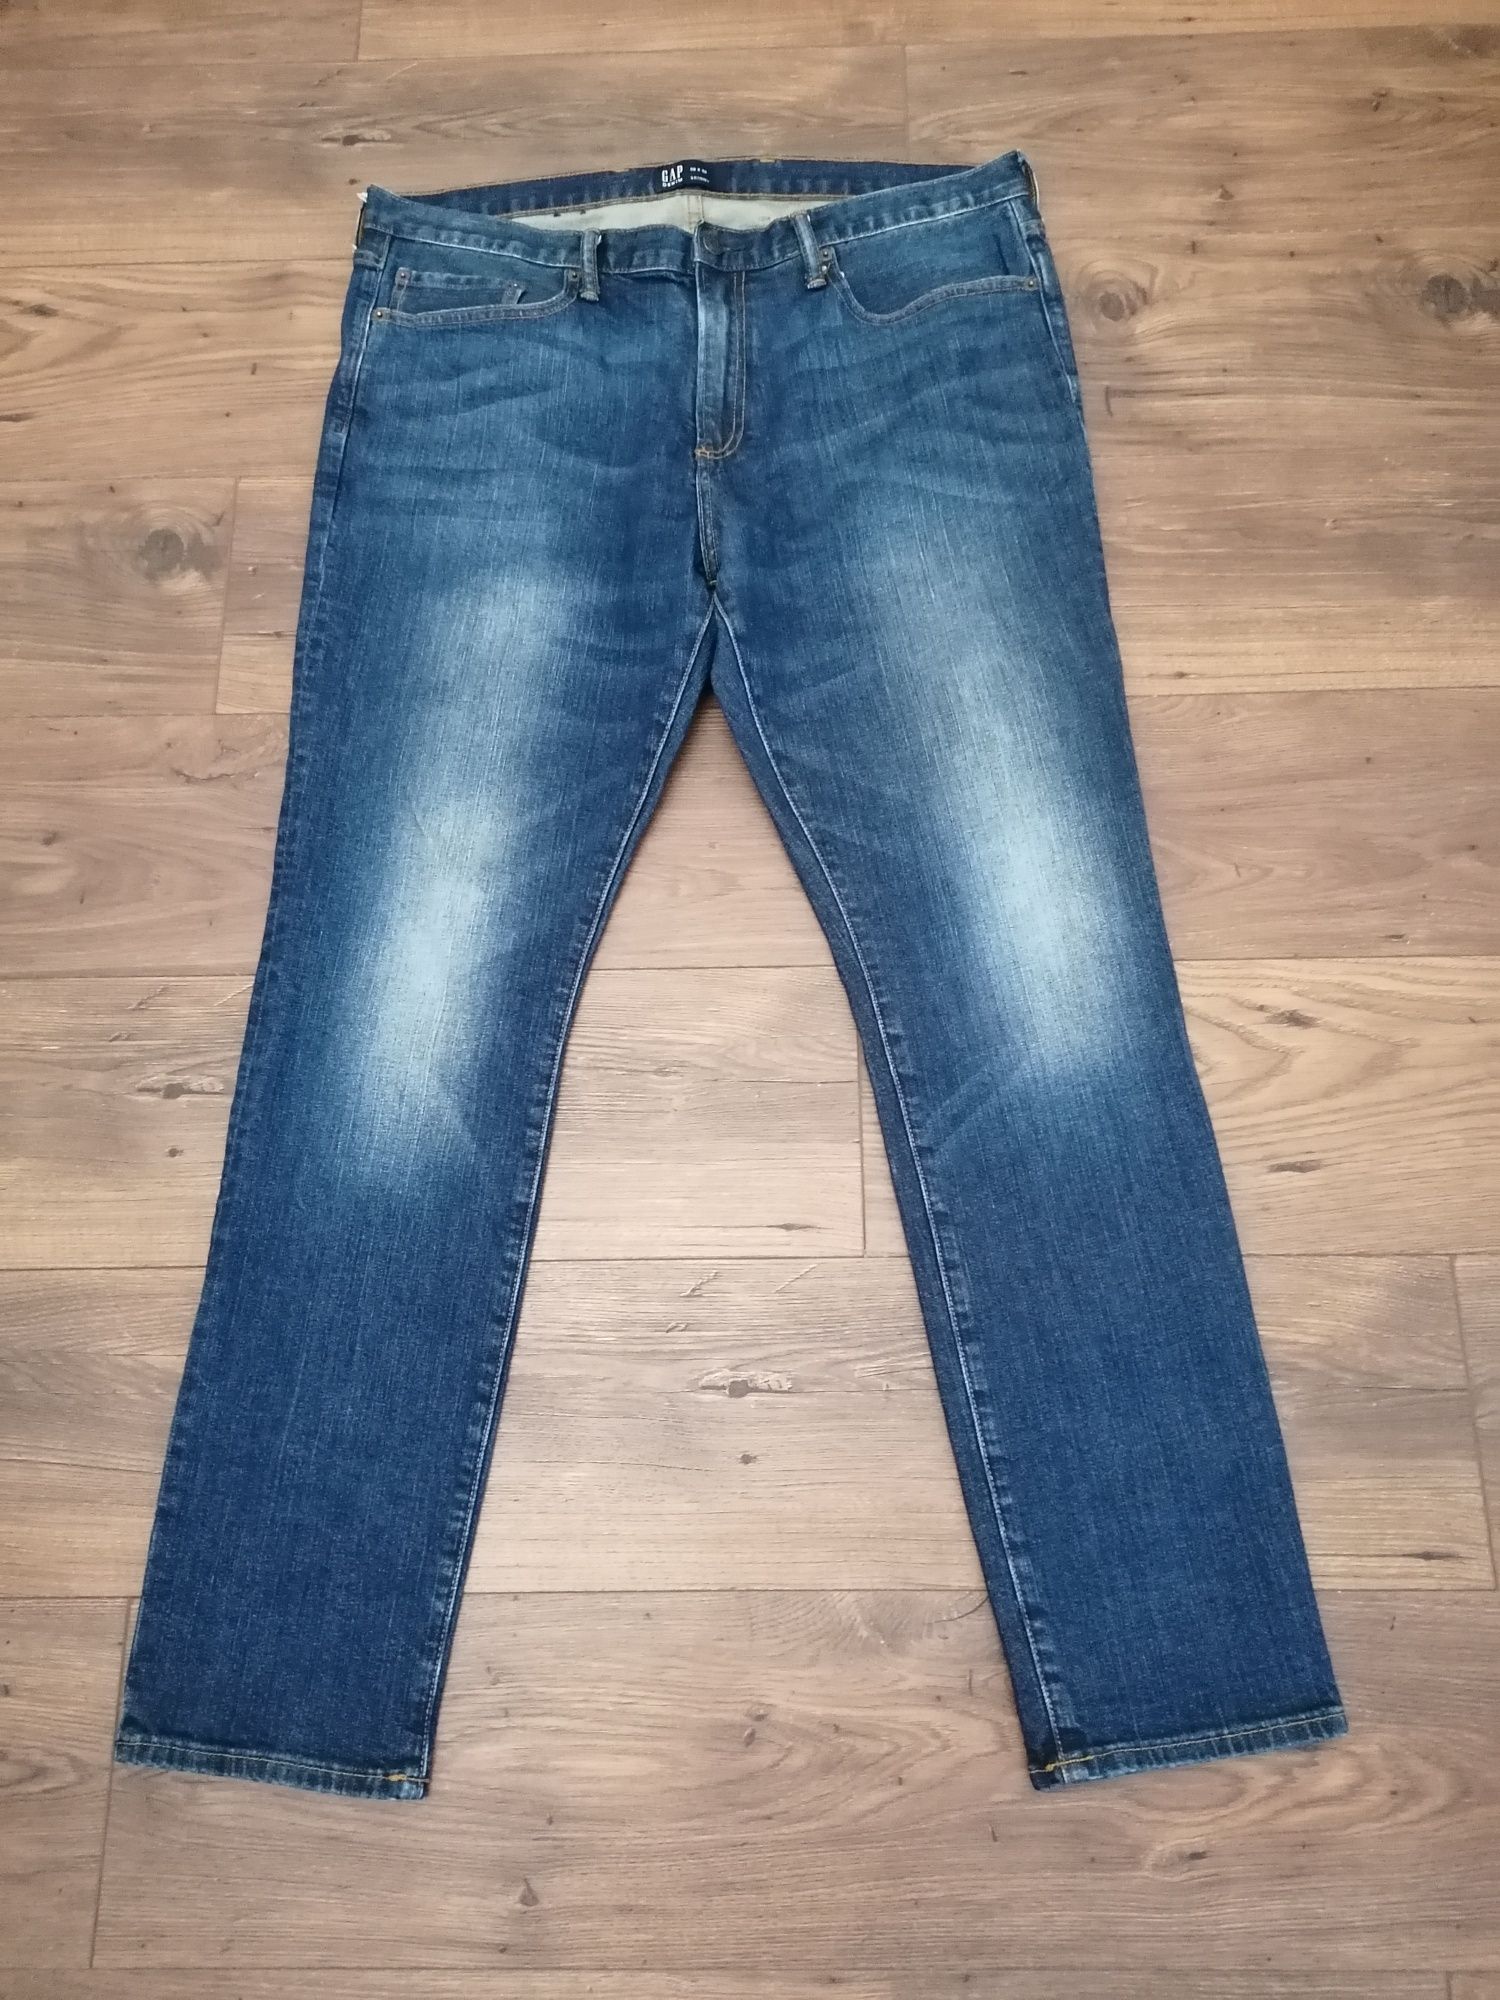 Dżinsy/jeansy męskie Gap duży rozmiar